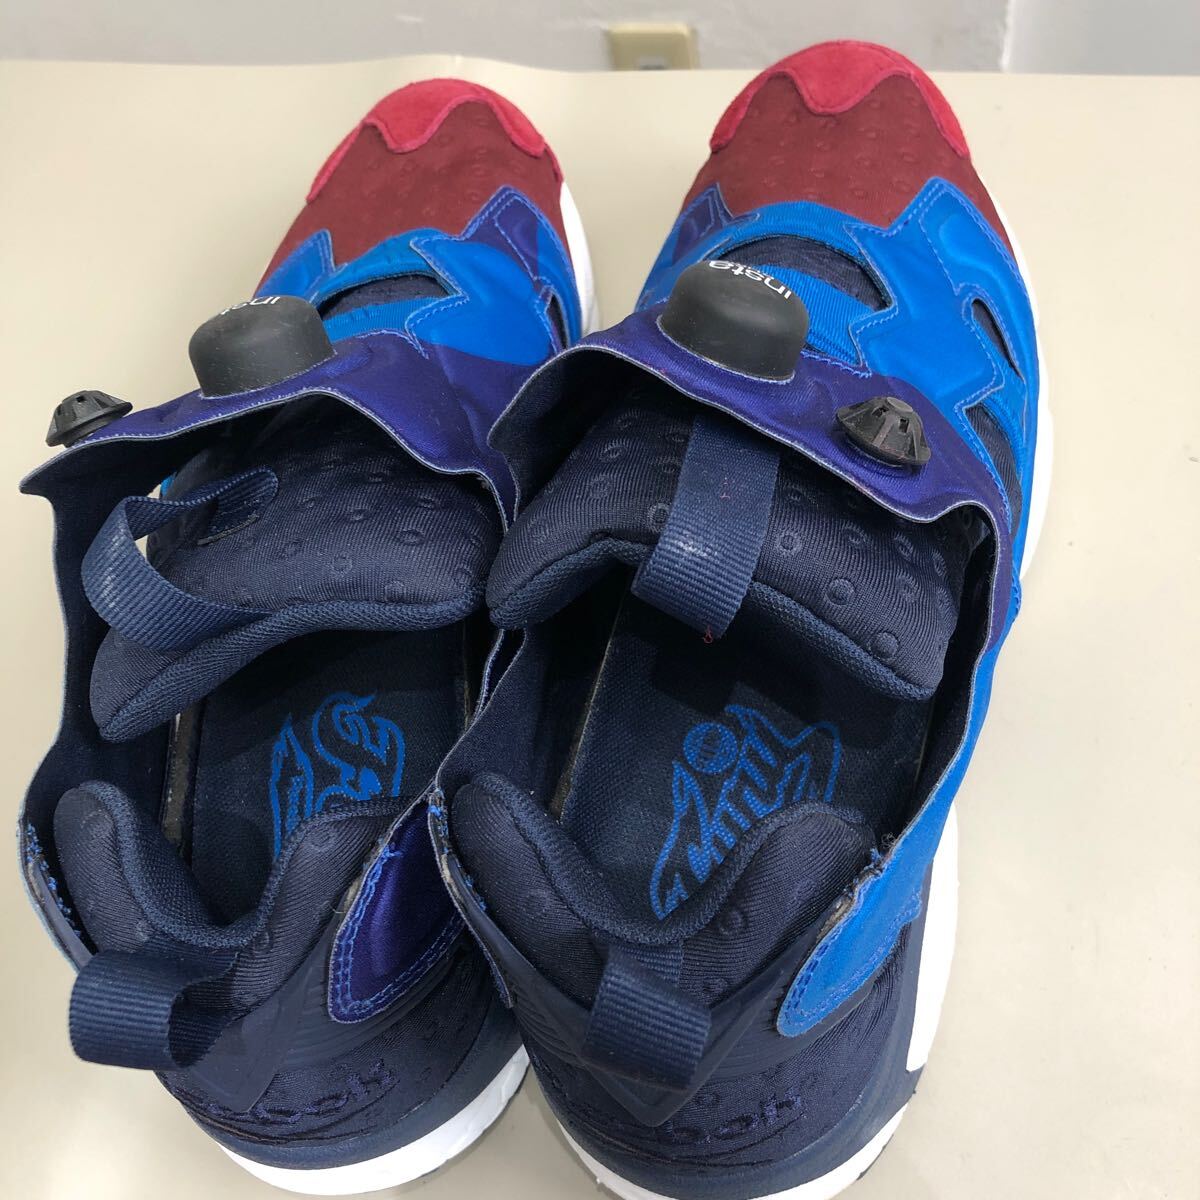 Reebok Reebok INSTAPUMPFURE Insta насос Fury спортивные туфли 27.5cm голубой красный темно-синий мужской обувь обувь NC1QSX7400215